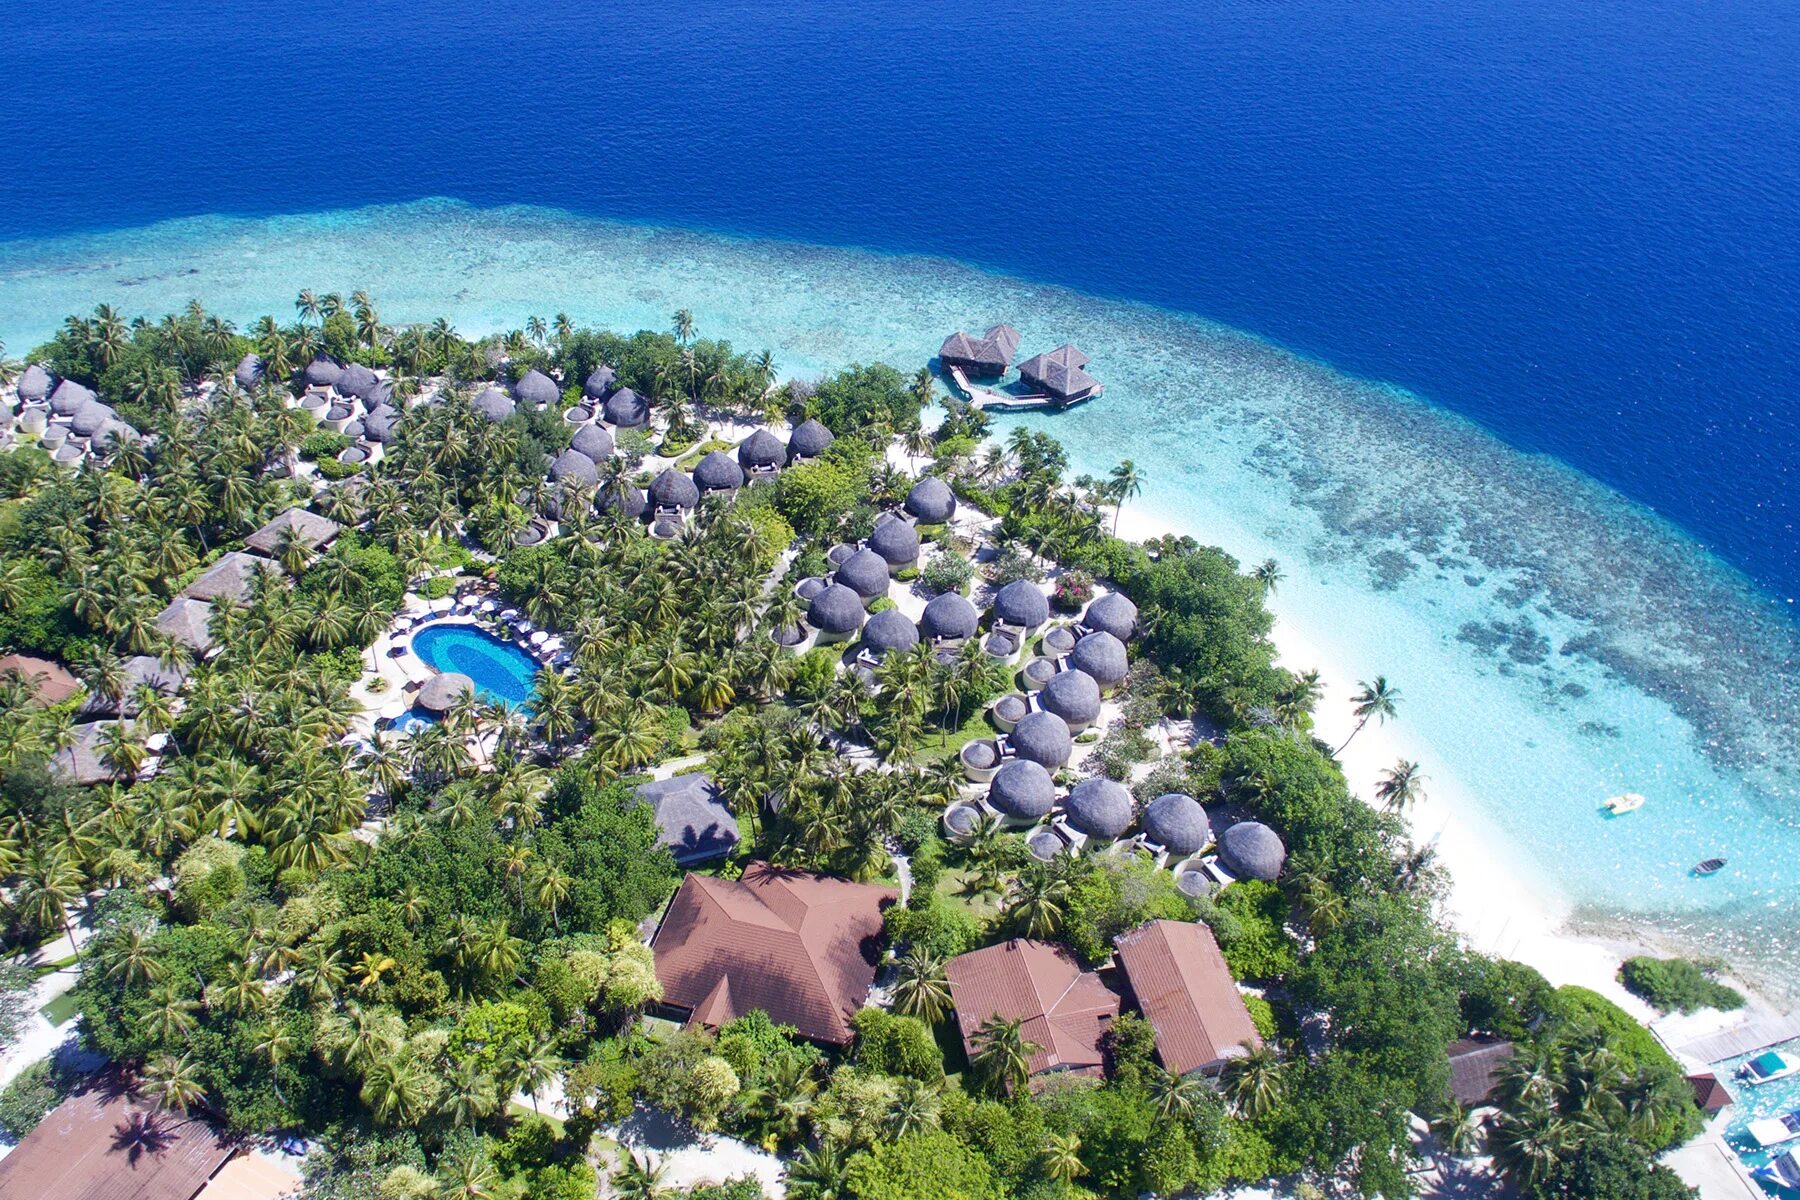 Отель Bandos Island Resort & Spa 4*. Остров Bandos Мальдивы. Bandos Maldives 4 Мальдивы. Bandos Maldives (ex. Bandos Island Resort) 4* Мальдивы,. Bandos island resort